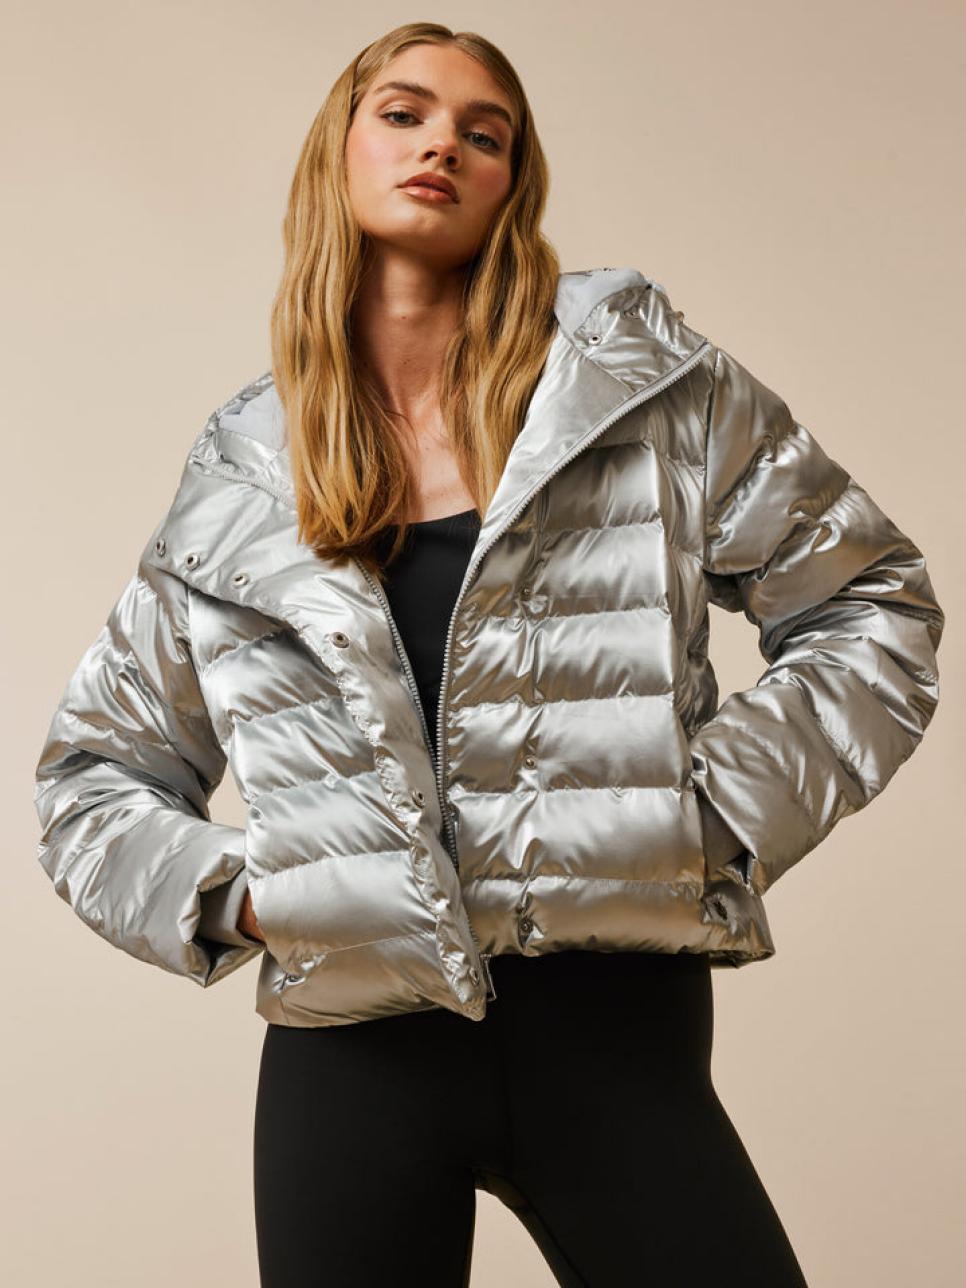 rx-greysonclothiersgreyson-metallic-eos-x-jacket.jpeg